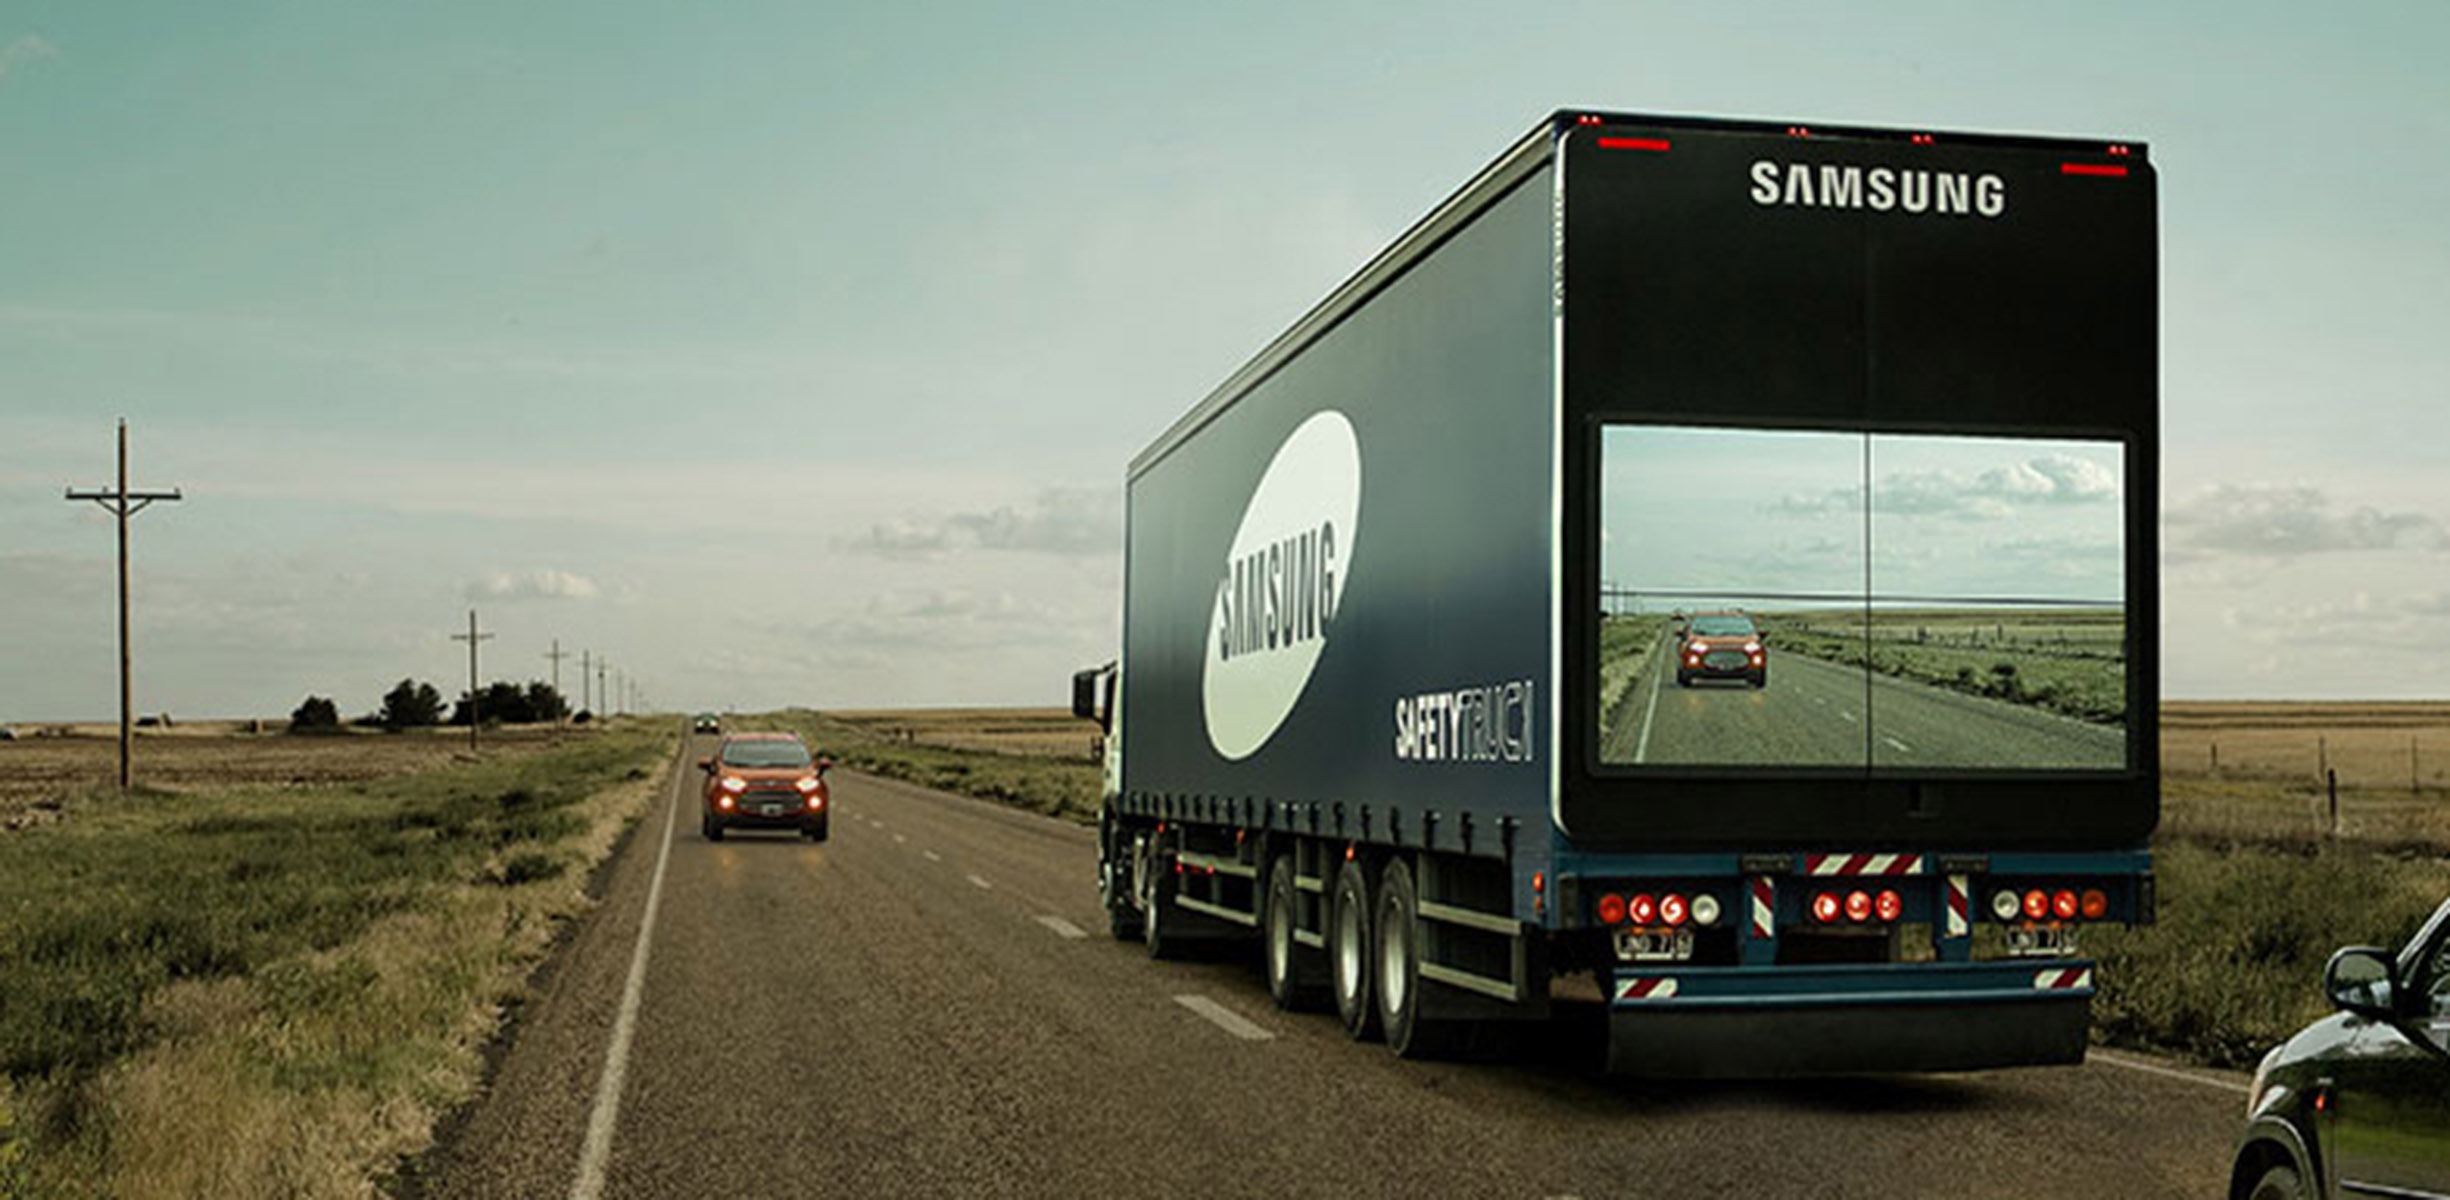 Samsung Safety Truck Upaya Kurangi Kecelakaan Di Argentina